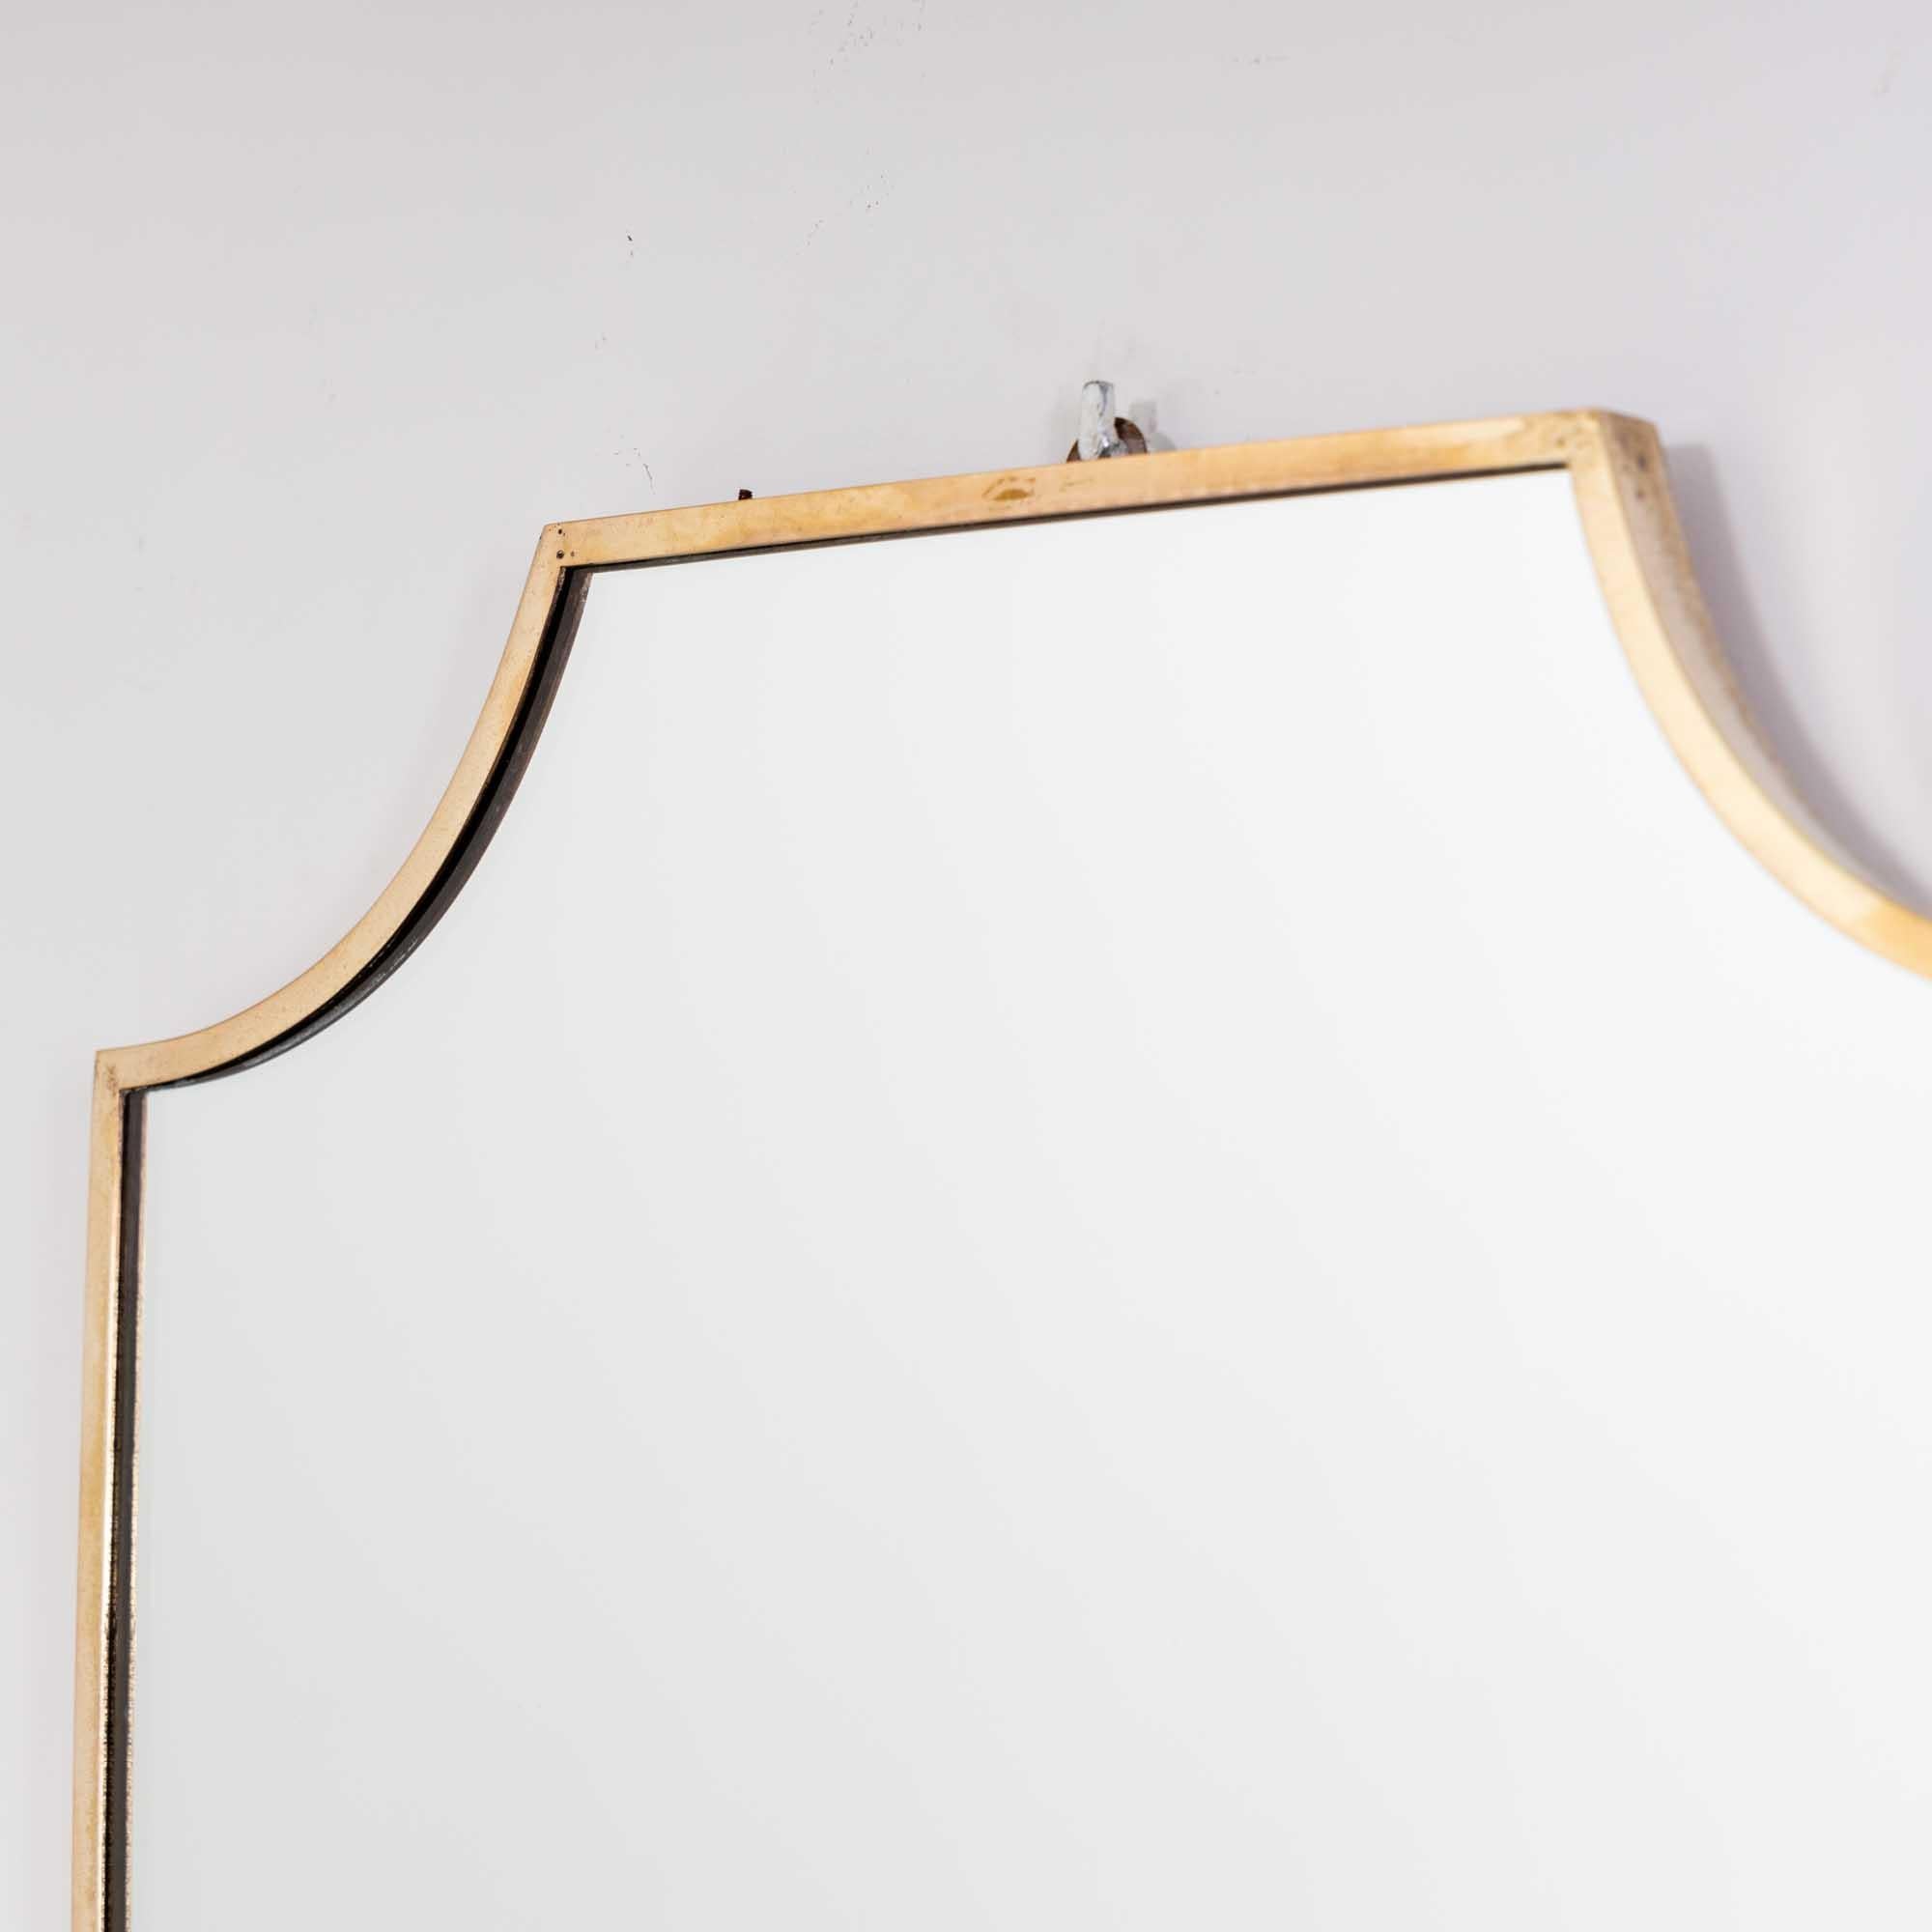 Miroir mural en forme de bouclier avec un cadre fin en laiton dans le style de Gio Ponti. 
Ce miroir est d'une taille pratique, ce qui en fait le miroir de courtoisie idéal.